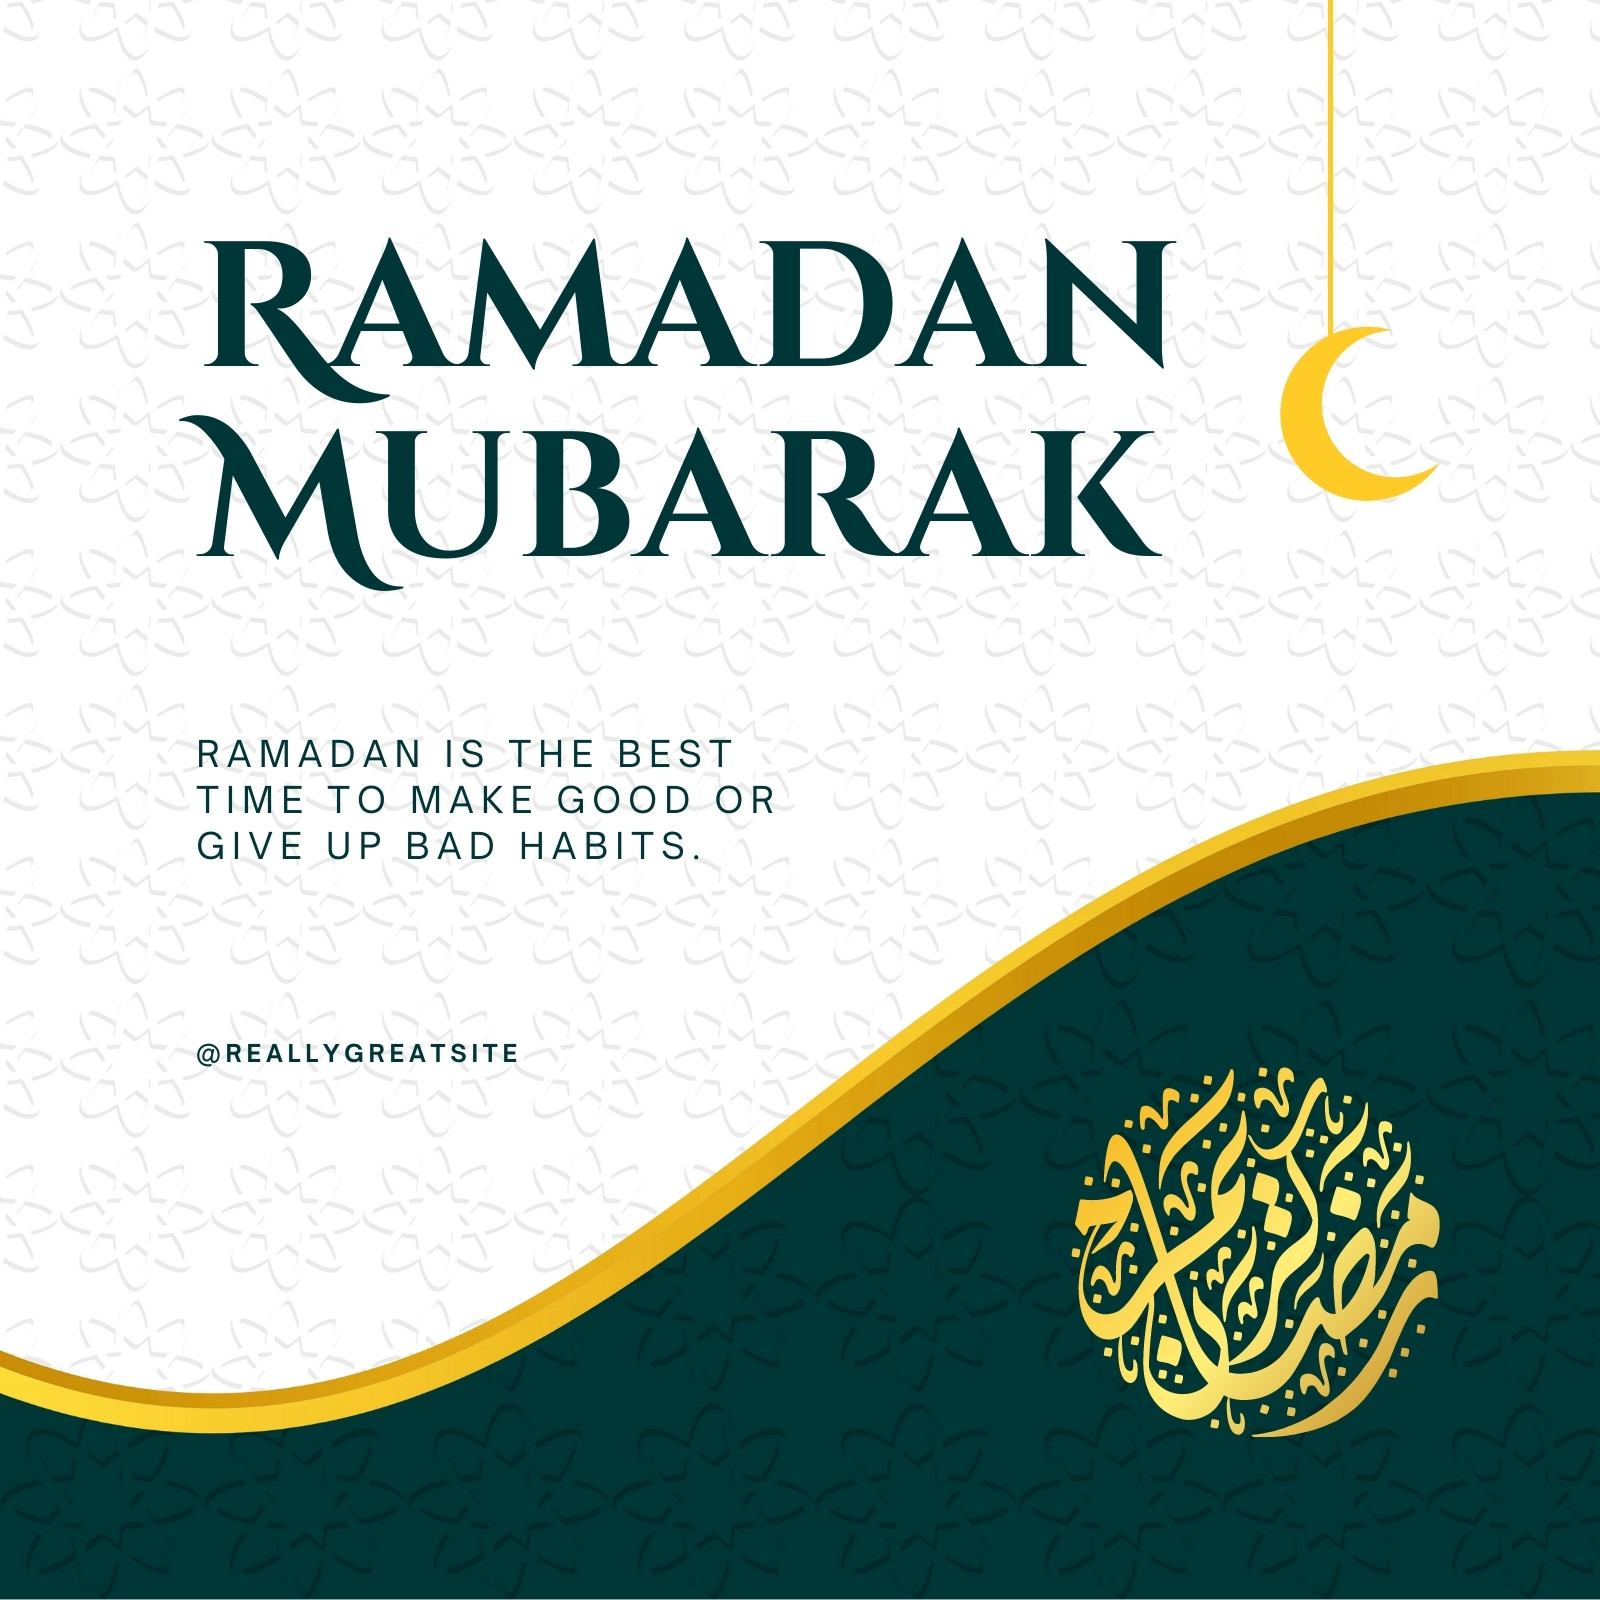 Ramadan Mubarak Templates là những mẫu hoàn hảo cho các sự kiện và lễ hội Ramadan. Hãy xem hình ảnh để khám phá các mẫu đầy màu sắc và sinh động, giúp bạn tạo ra không khí lễ hội thật trọn vẹn và đặc biệt hơn.